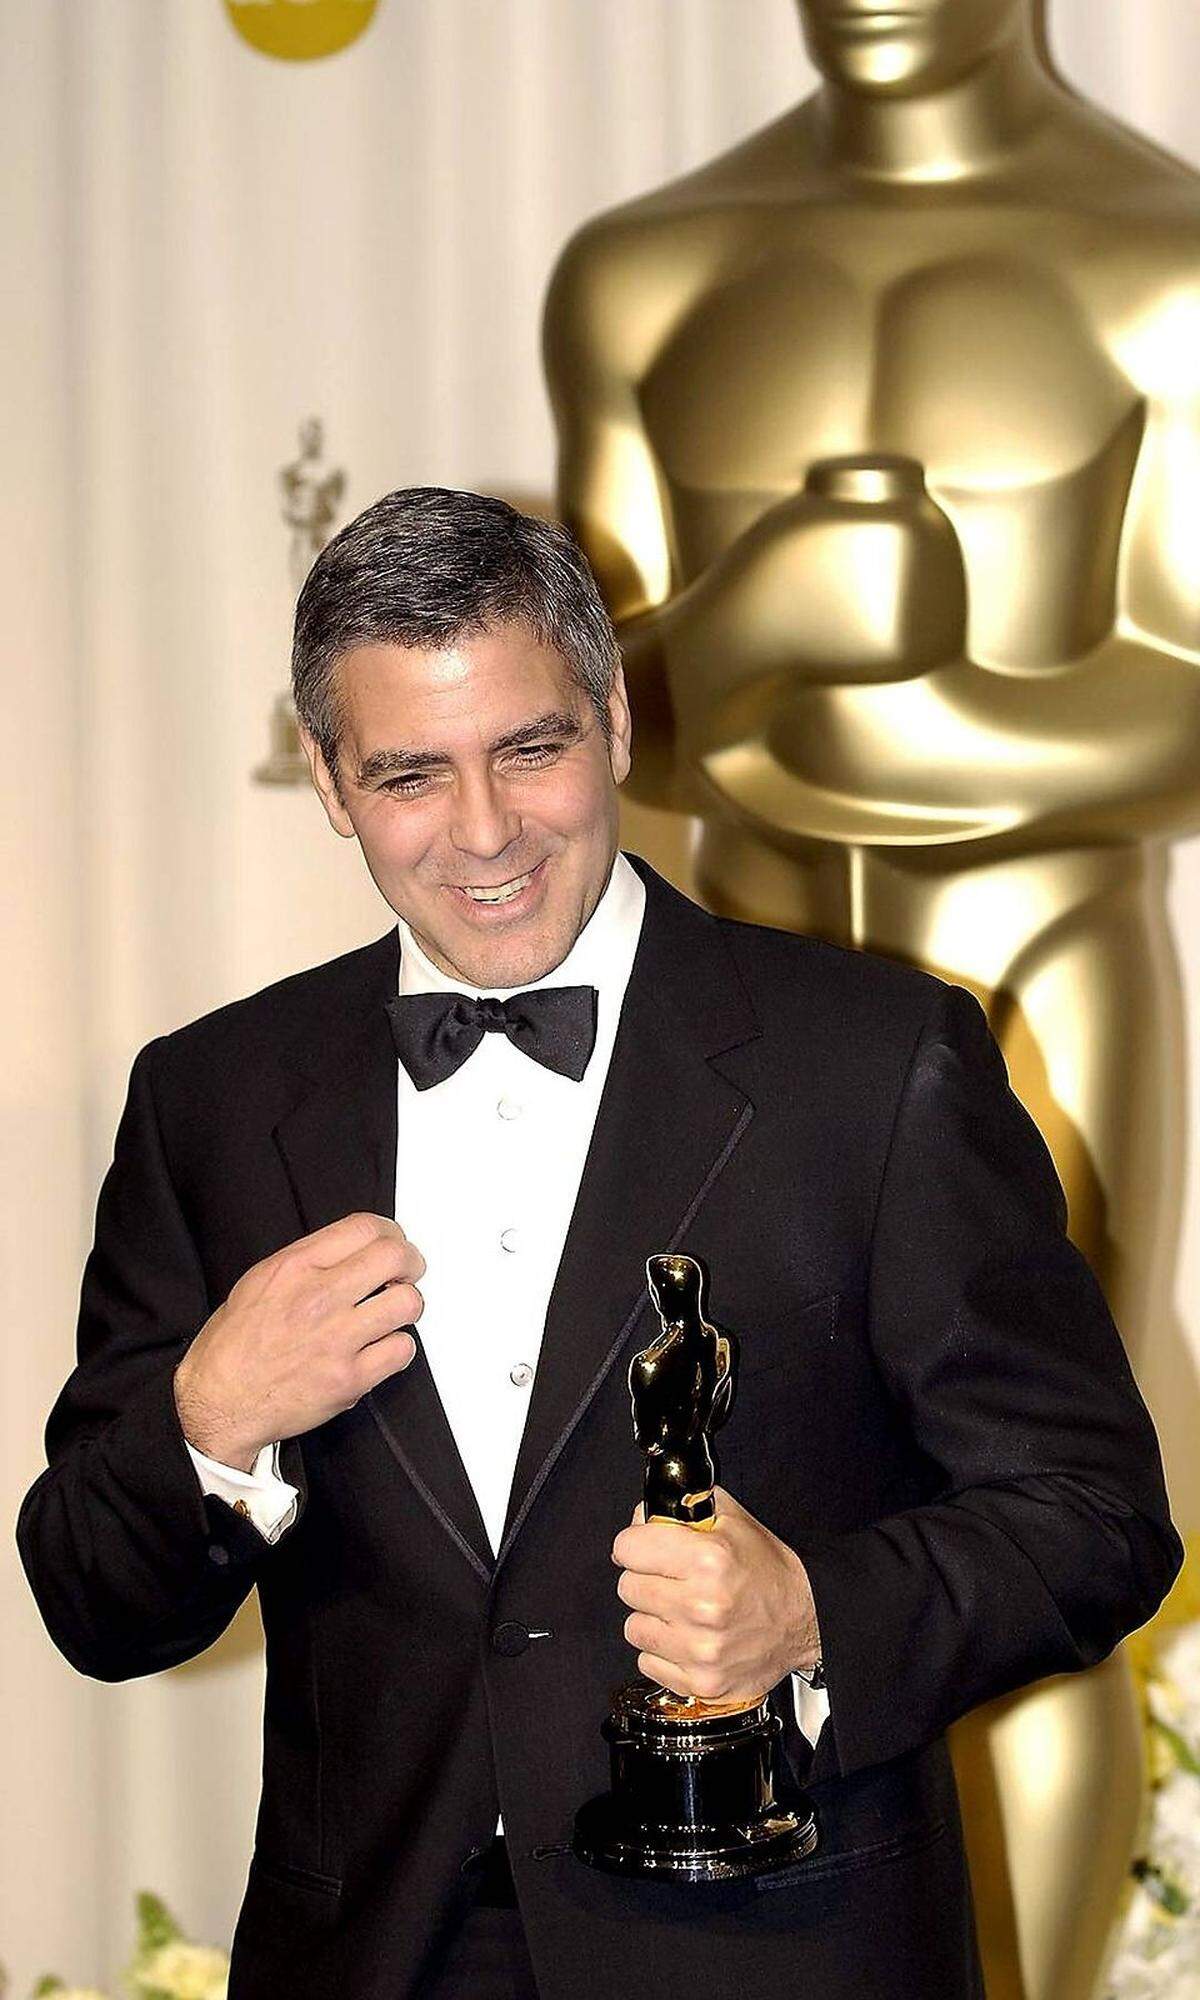 Essen zu dürfen, ohne auf die Kalorien aufzupassen, machte Clooney aber keinen Spaß. Im Gegenteil. Das Gewicht verursachte eine Rückenverletzung. Der Fitness-Fanatiker konnte es kaum erwarten, die Extra-Pfunde loszuwerden. Zum Trost gab's den Golden Globe und den Oscar als Bester Nebendarsteller.